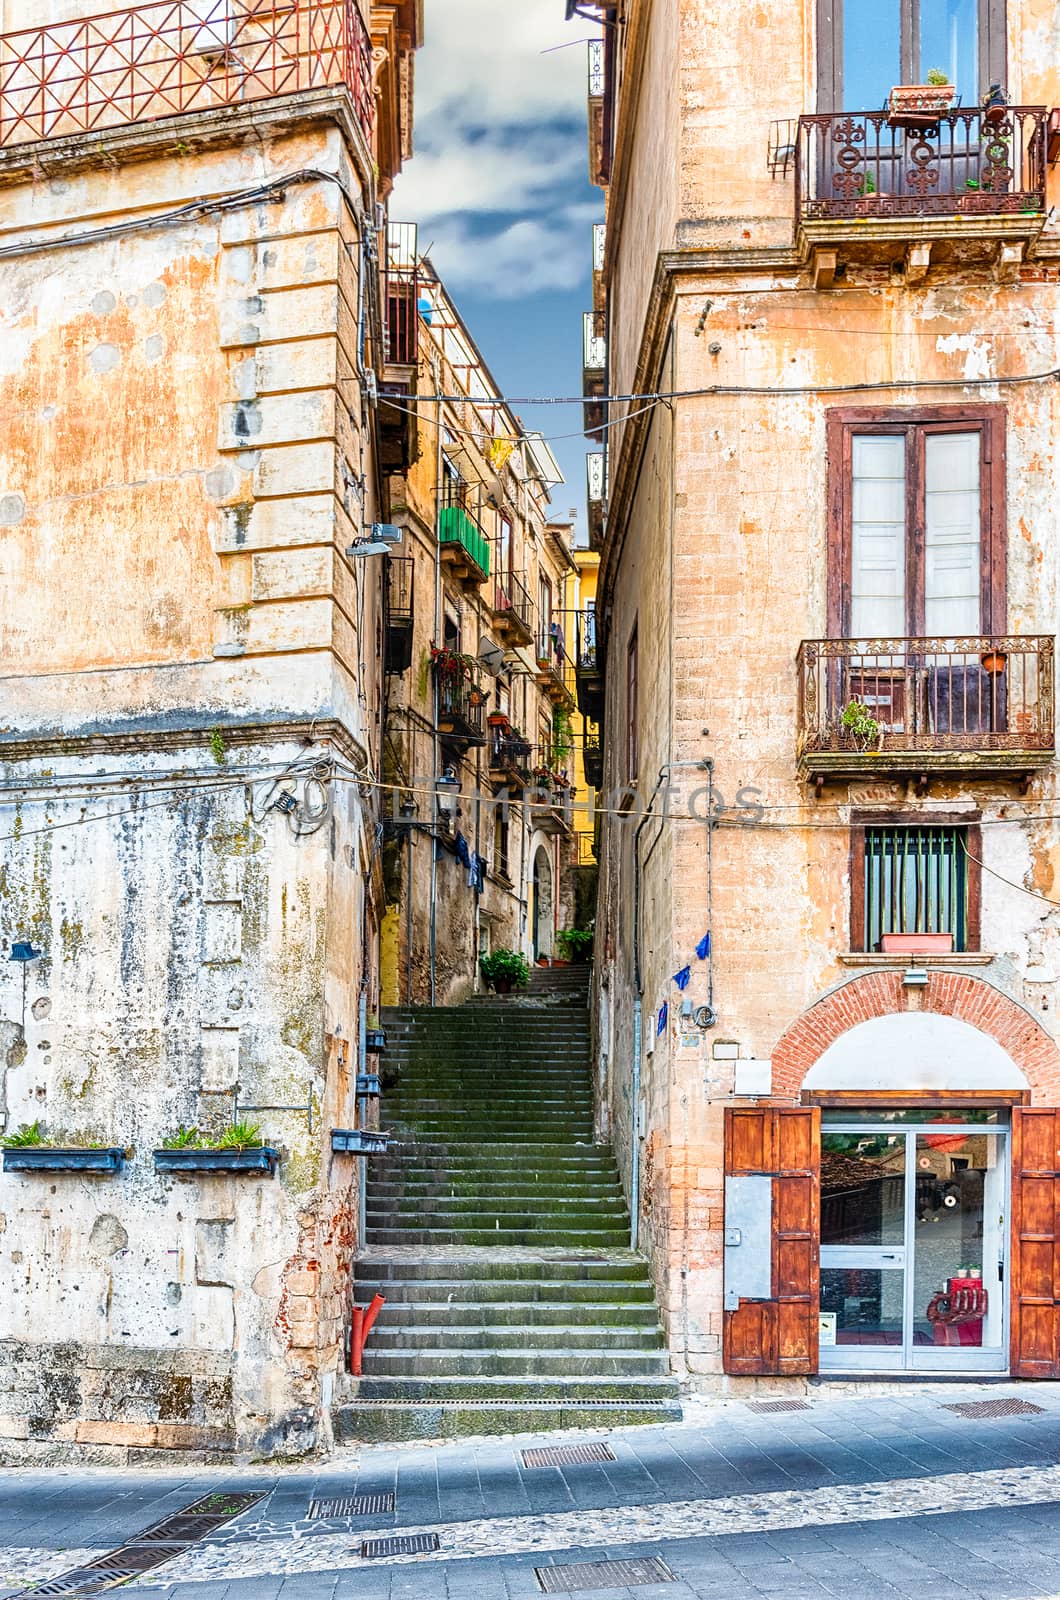 Historic city centre of Cosenza, Calabria, Italy by marcorubino